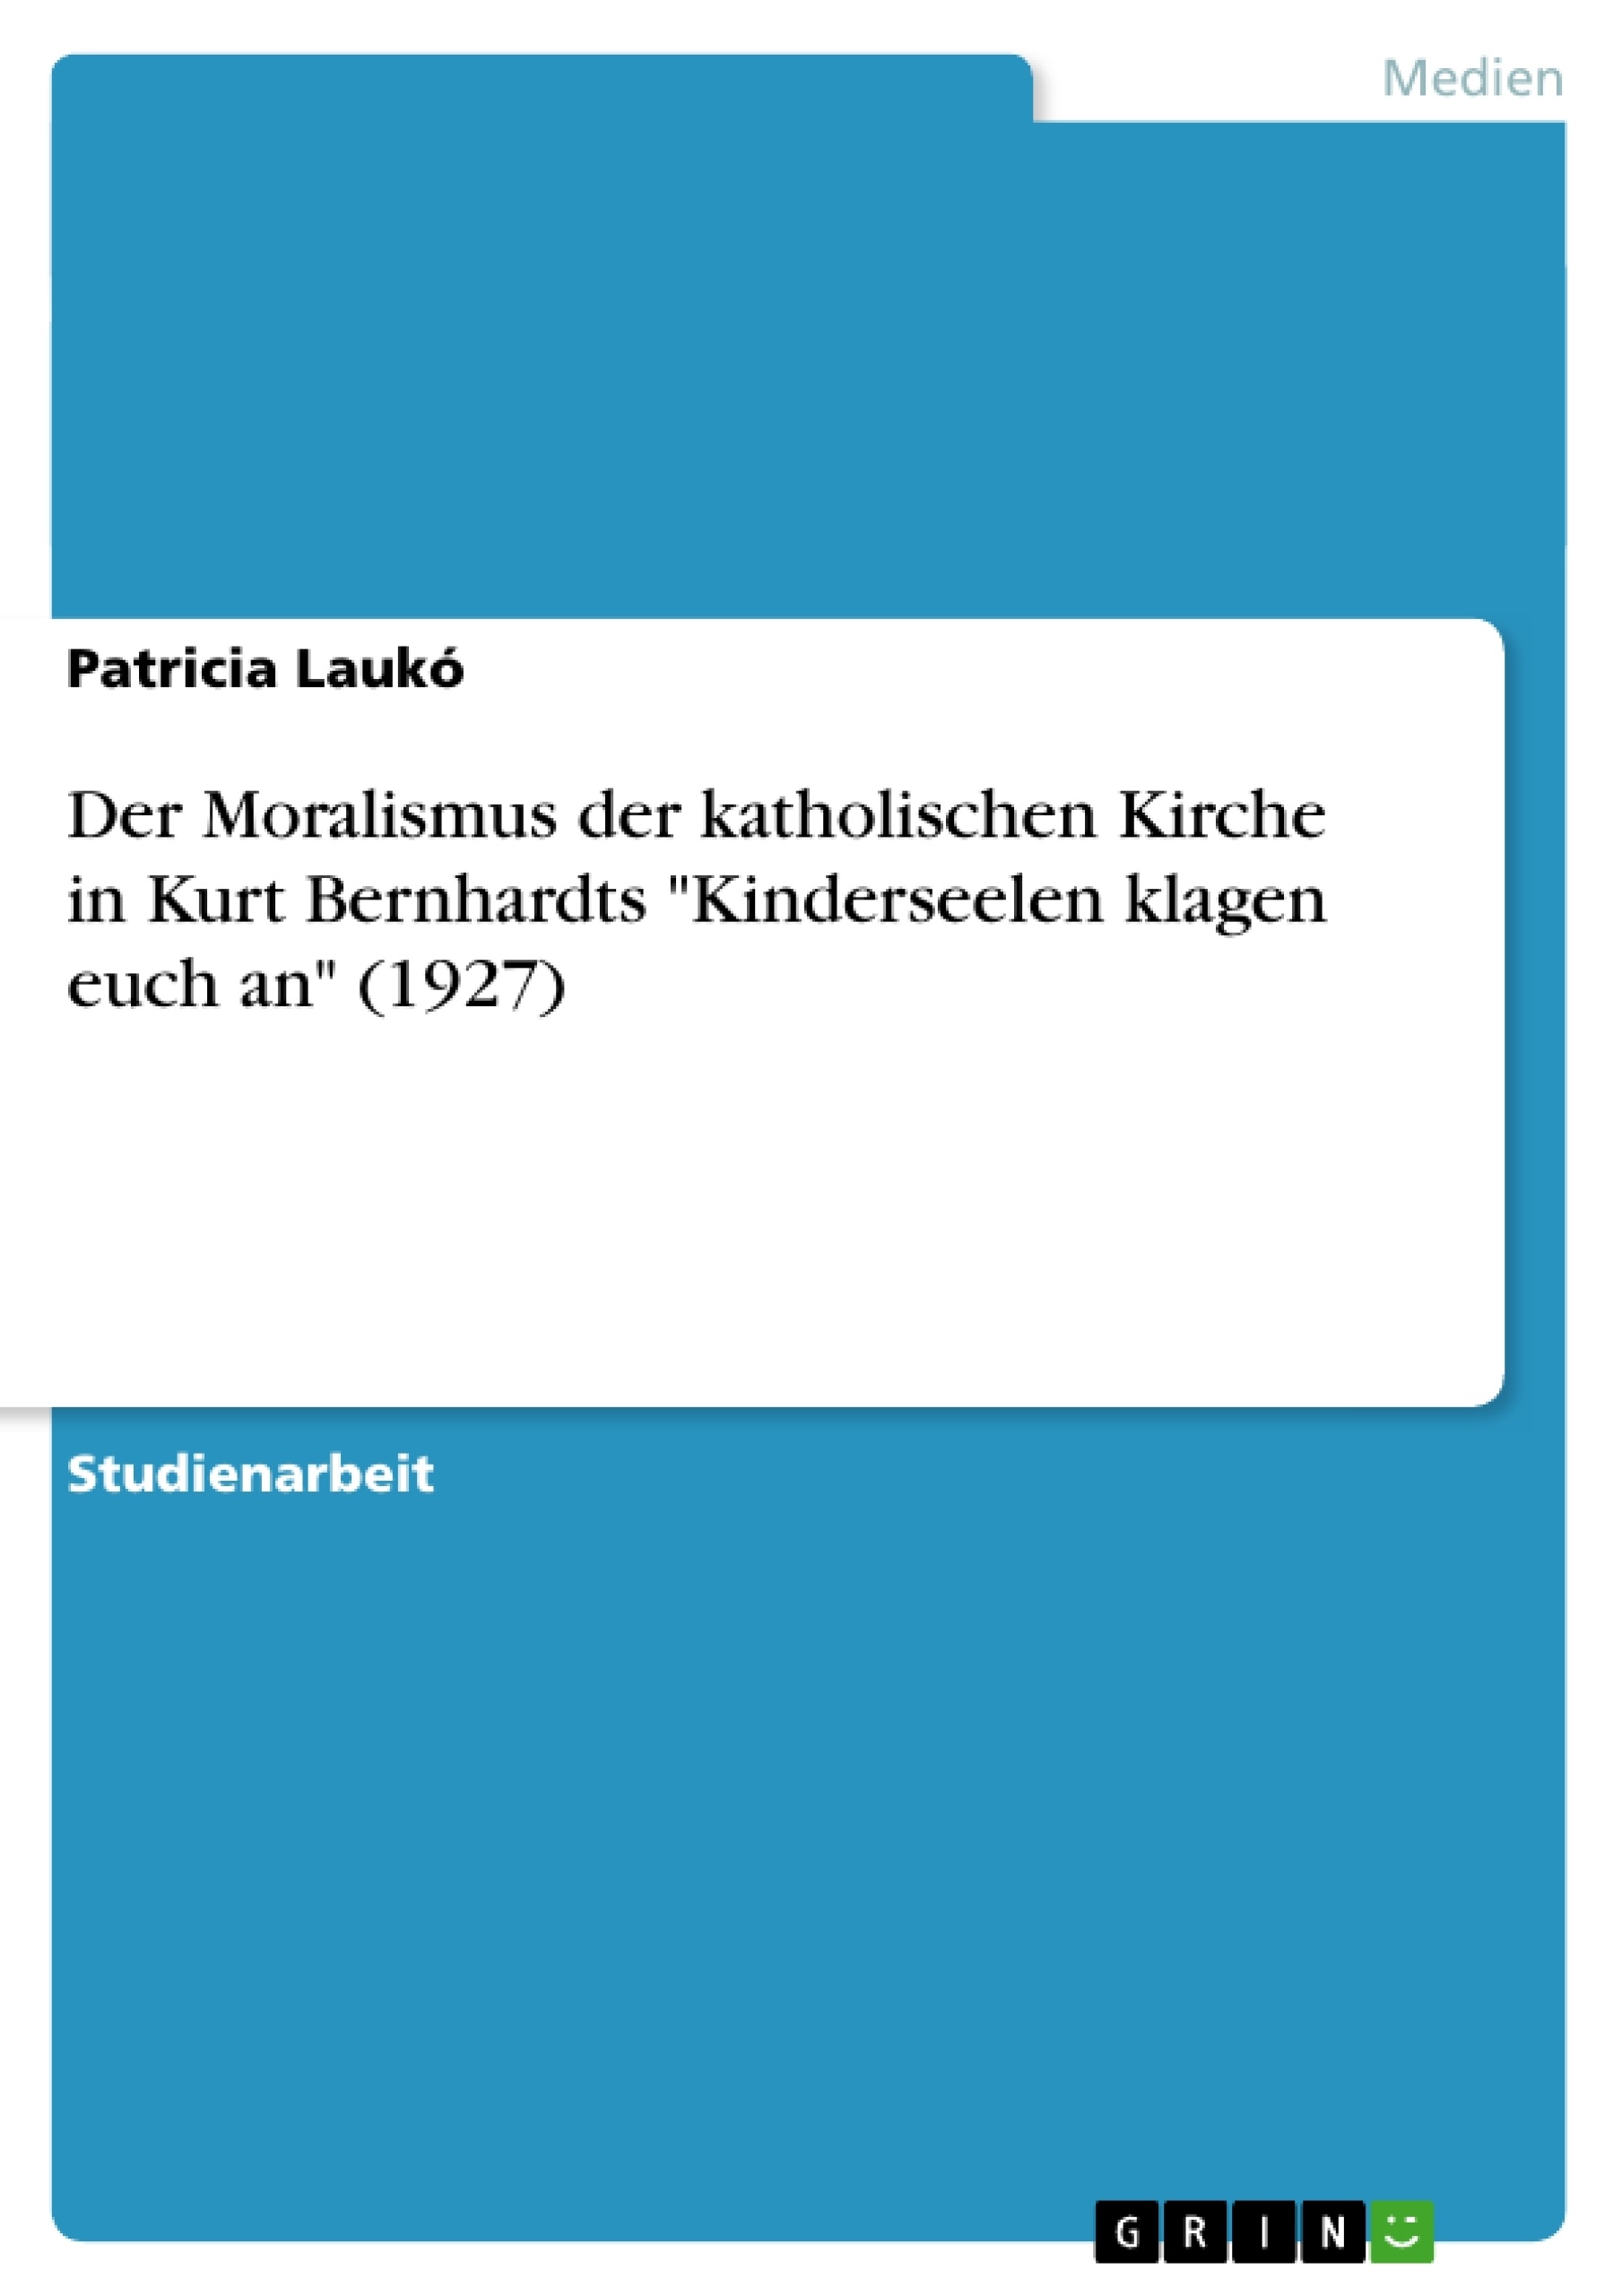 Title: Der Moralismus der katholischen Kirche in Kurt Bernhardts "Kinderseelen klagen euch an" (1927)